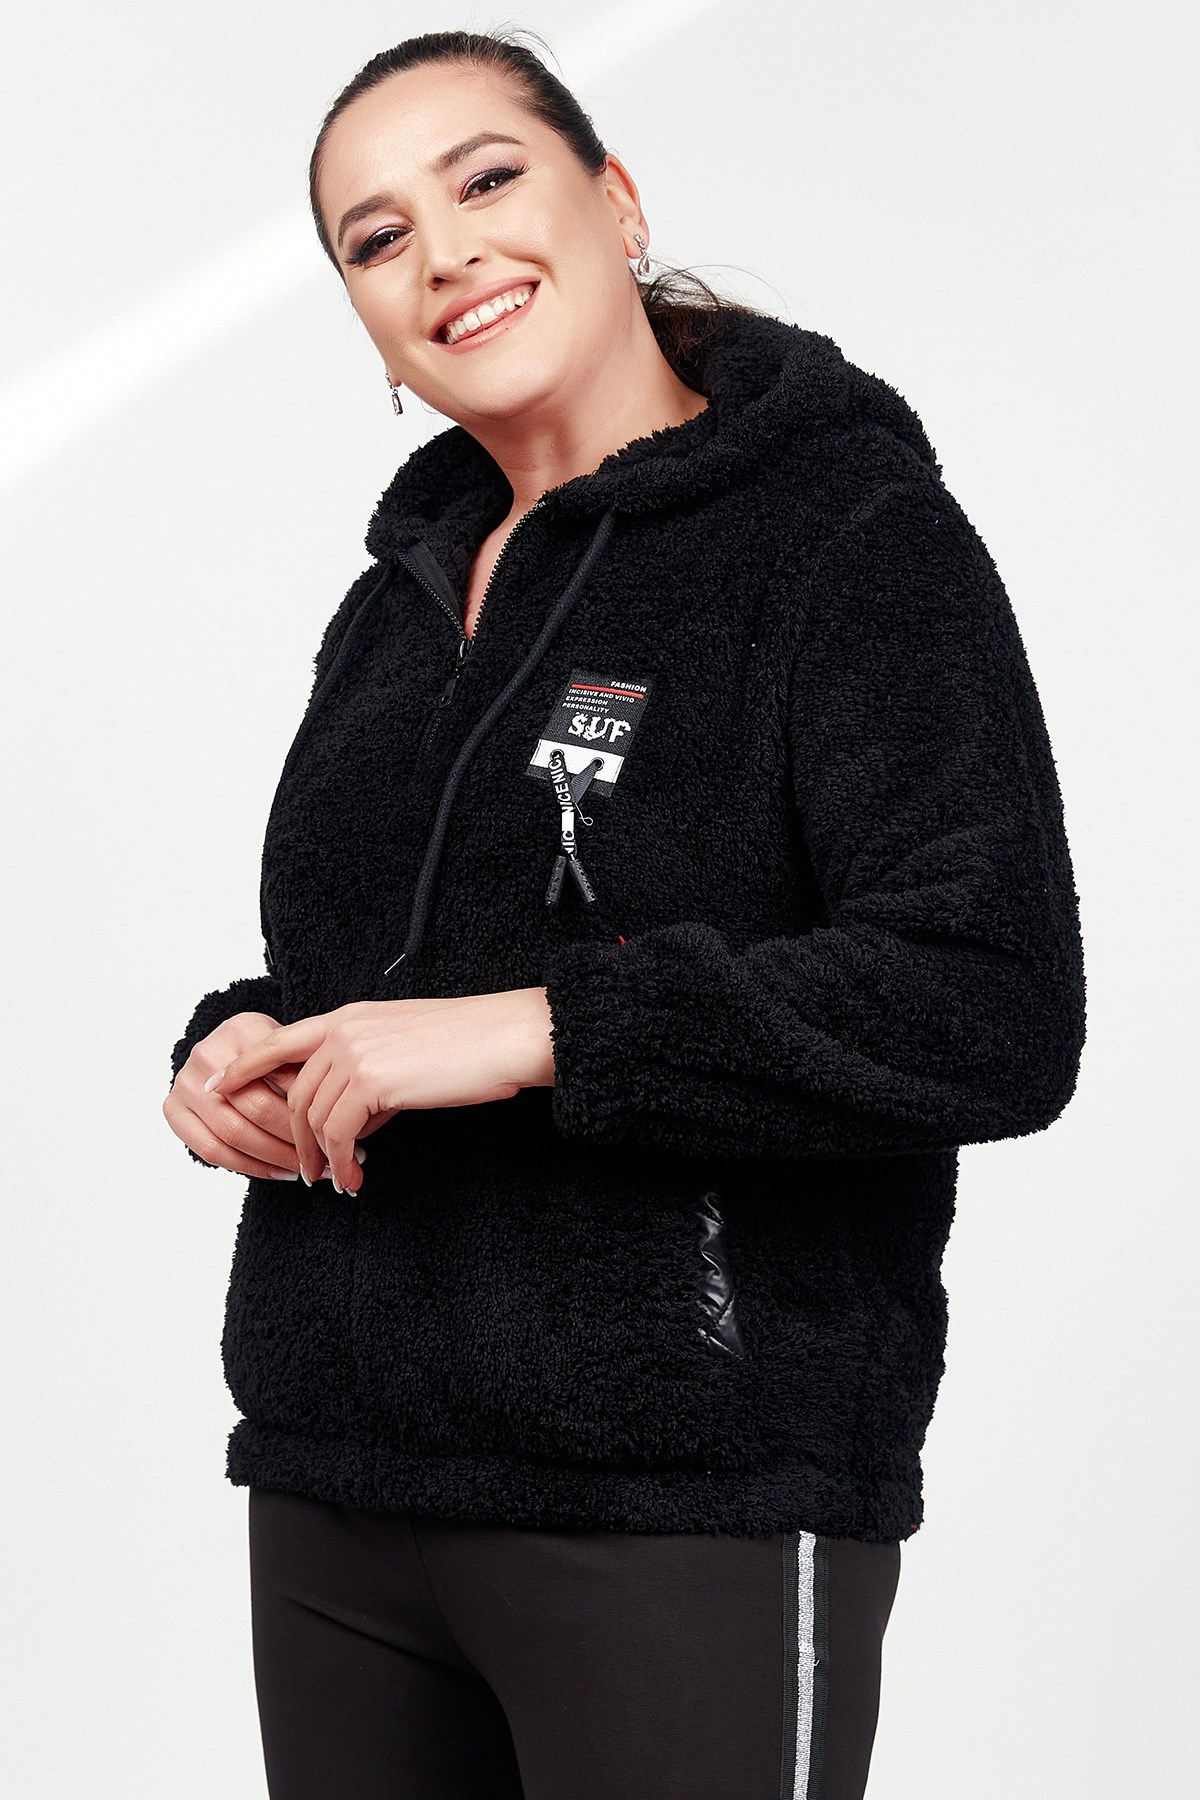 Kadın Siyah Polar Cepli Spor Büyük Beden Sweatshirt